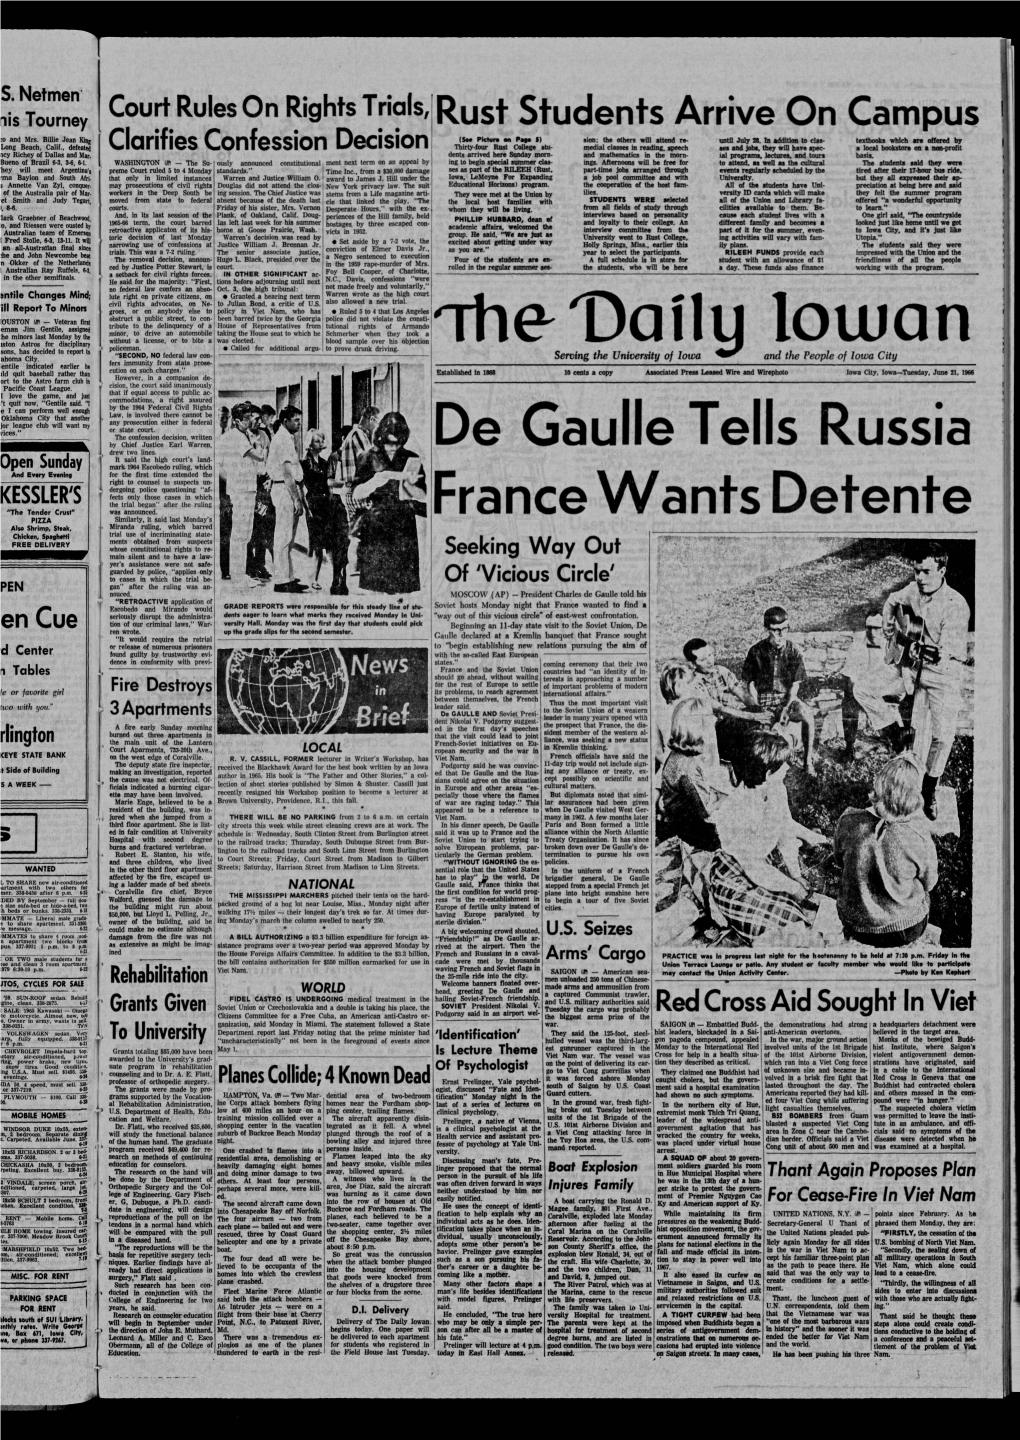 Daily Iowan (Iowa City, Iowa), 1966-06-21